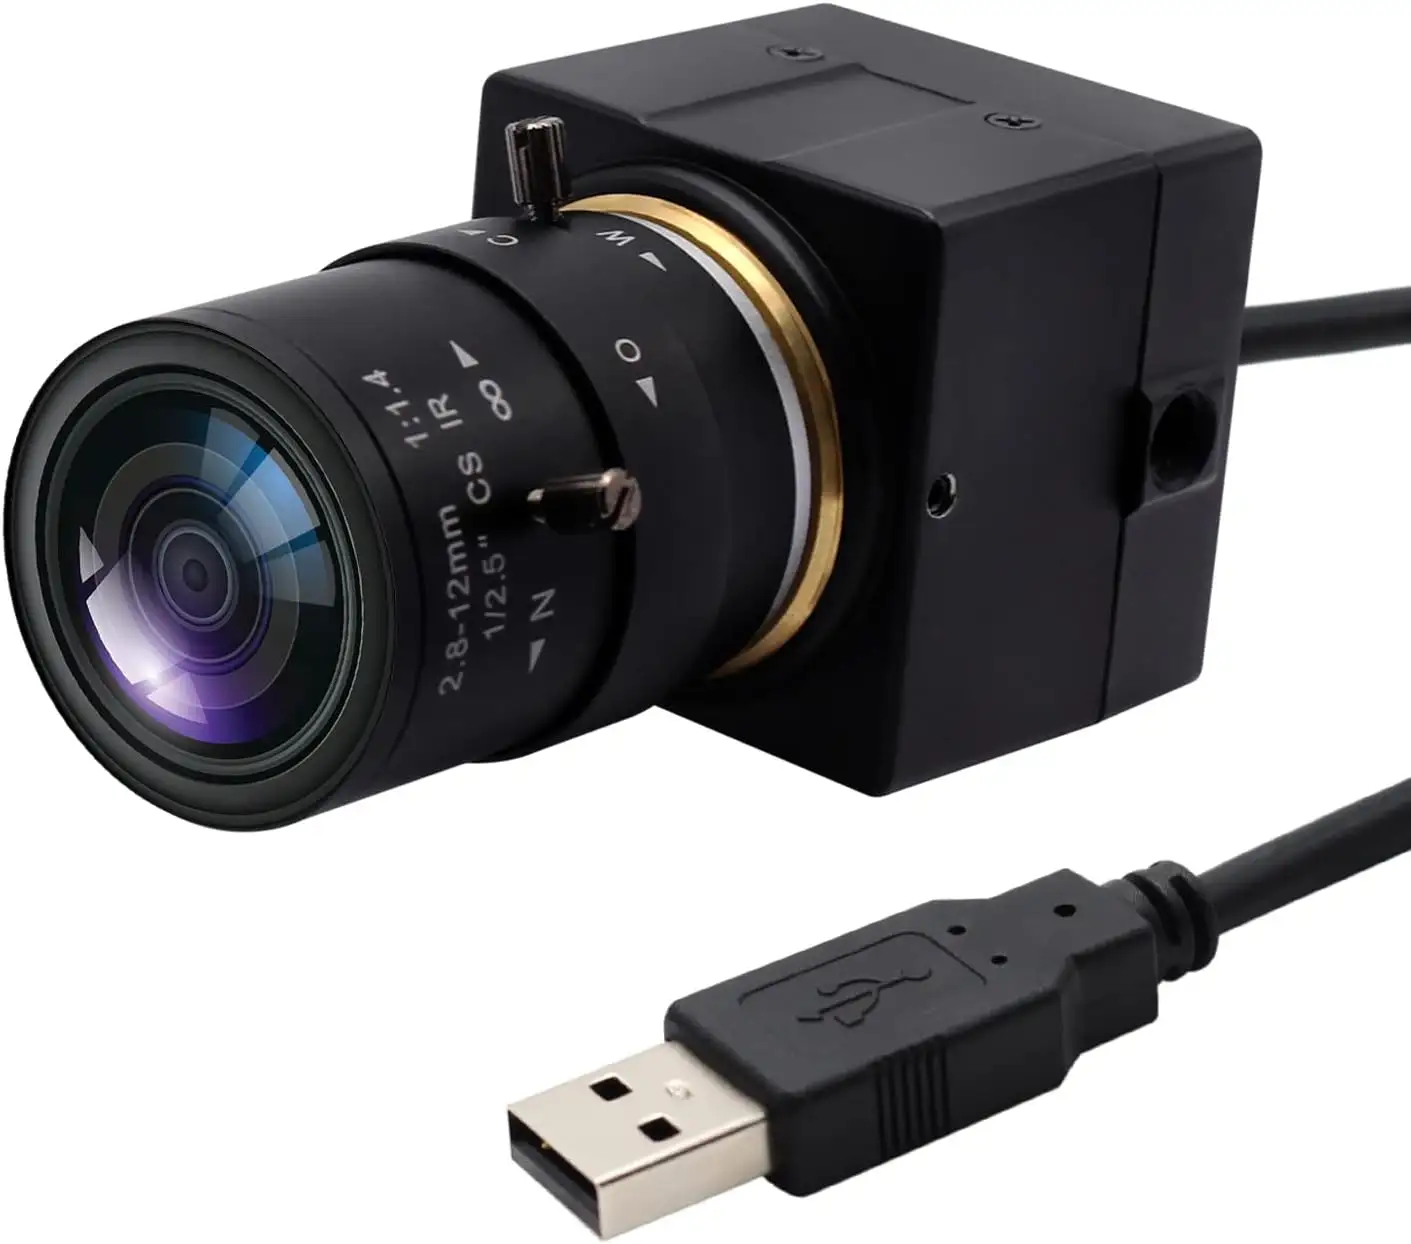 ELP Free driver IMX179 videocamera USB da 8mp con obiettivo Zoom da 2.8-12mm mini telecamera di sicurezza USB per visione artificiale industriale